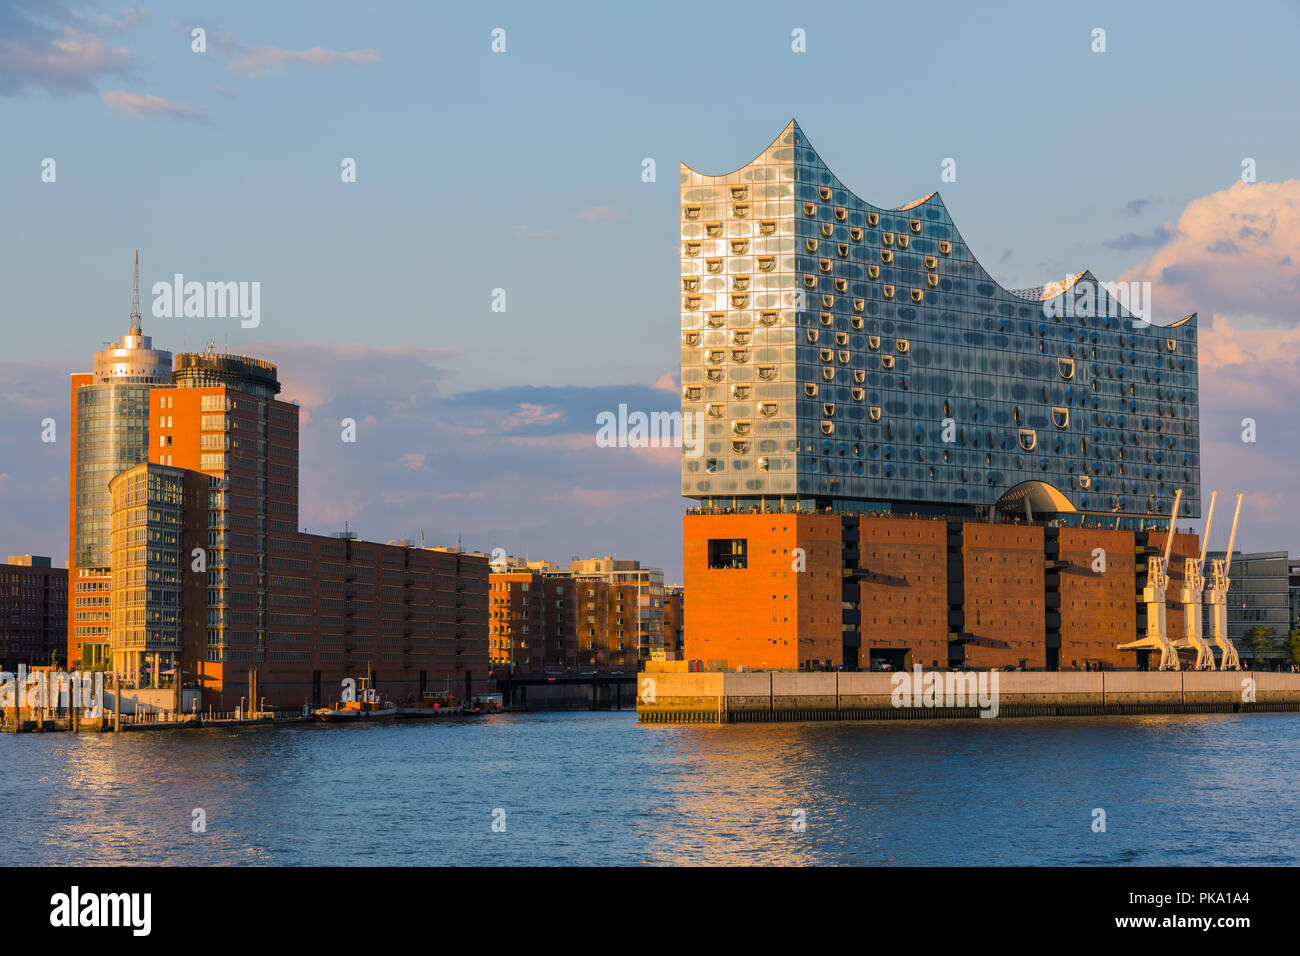 Die Elbphilharmonie (Elbphilharmonie) ist ein konzertsaal in der HafenCity Quartal Hamburg, Deutschland, auf der Halbinsel von der Elbe. Es ist Stockfoto